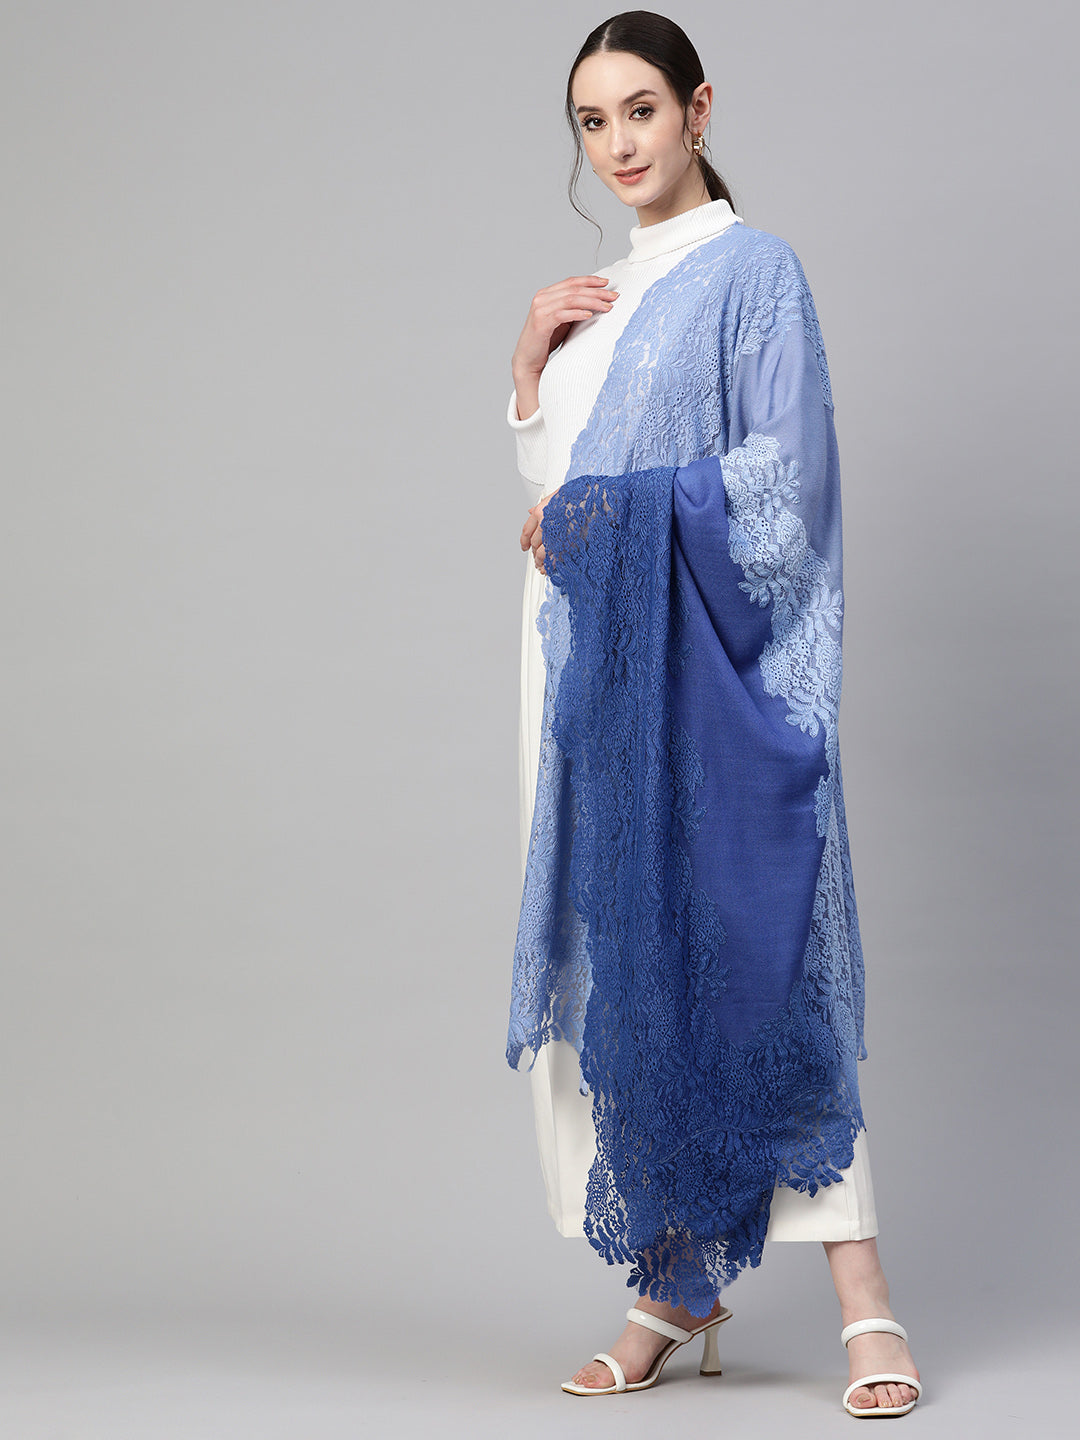 lace shawl, shawls online, wedding gifts, bridal shawls by modarta 